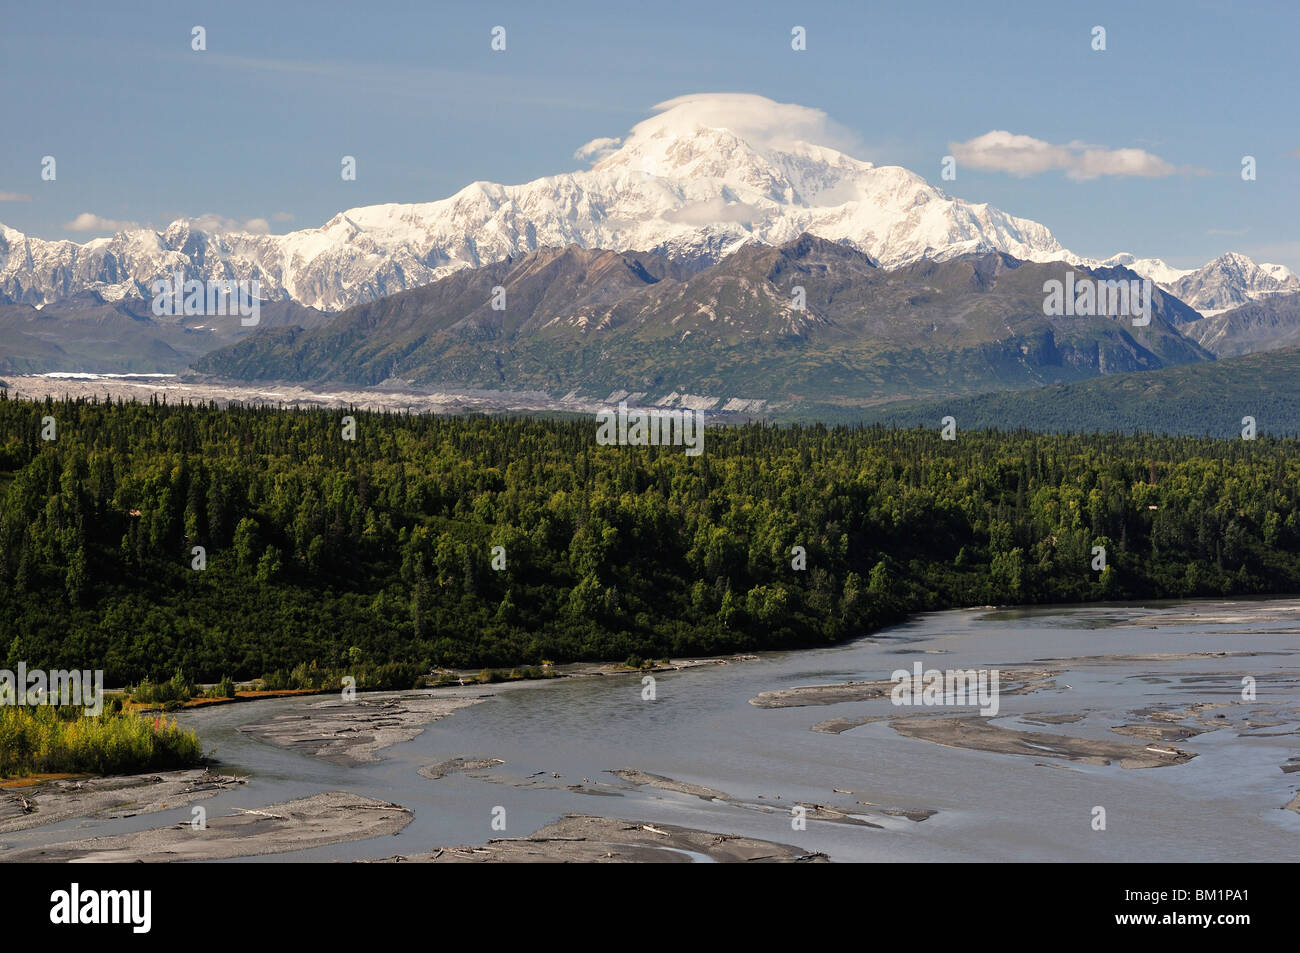 Le mont McKinley (Denali) Montage et Chulitna River, Alaska, États-Unis d'Amérique, Amérique du Nord Banque D'Images